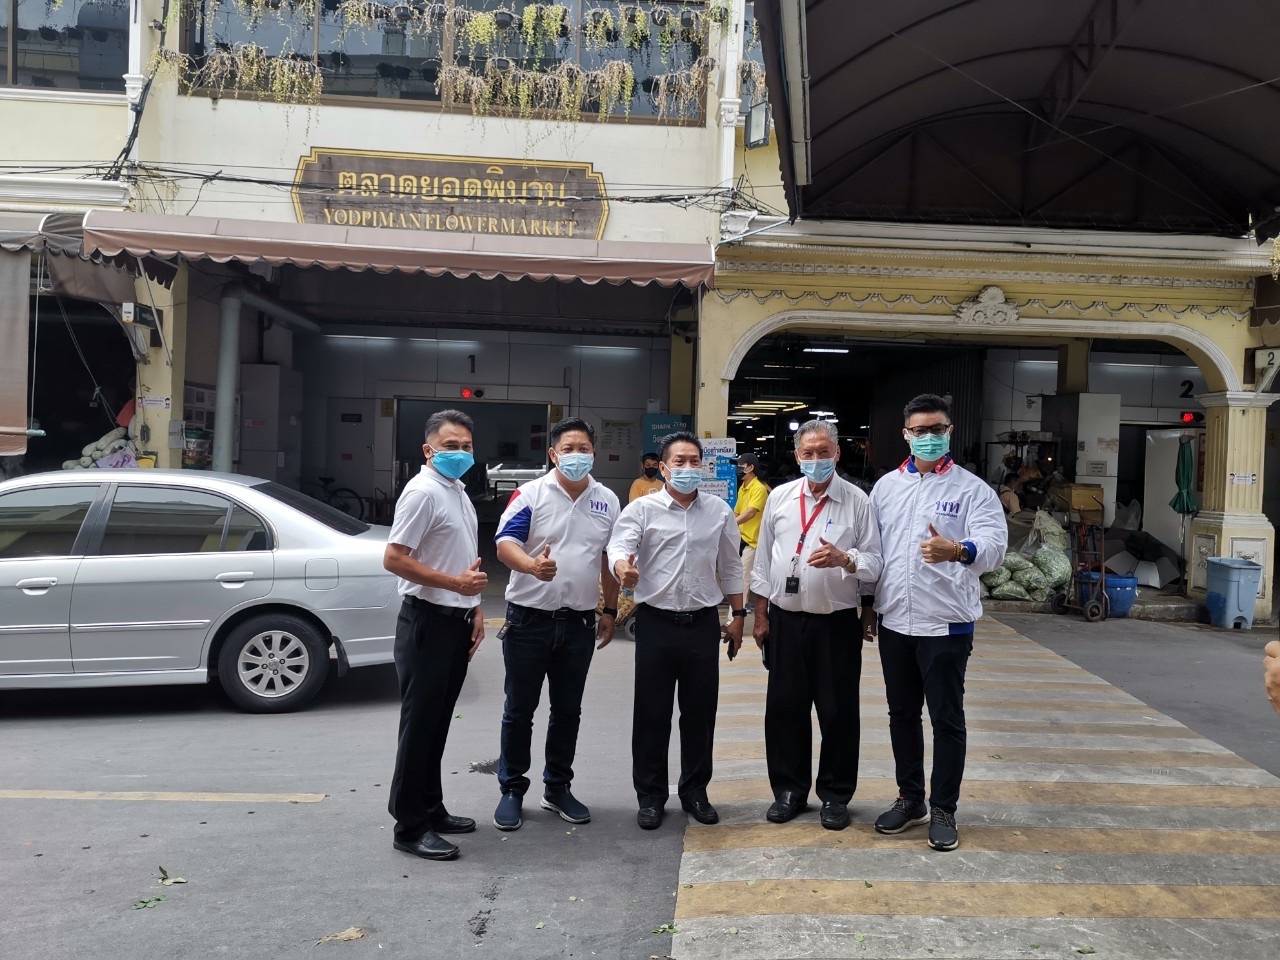 ทีมเพื่อไทยเขต1 กทม. “ลุย” พ่นน้ำยาฆ่าเชื้อโควิด “ปากคลองตลาด” หวังเปิดตลาดหมุนเศรษฐกิจ